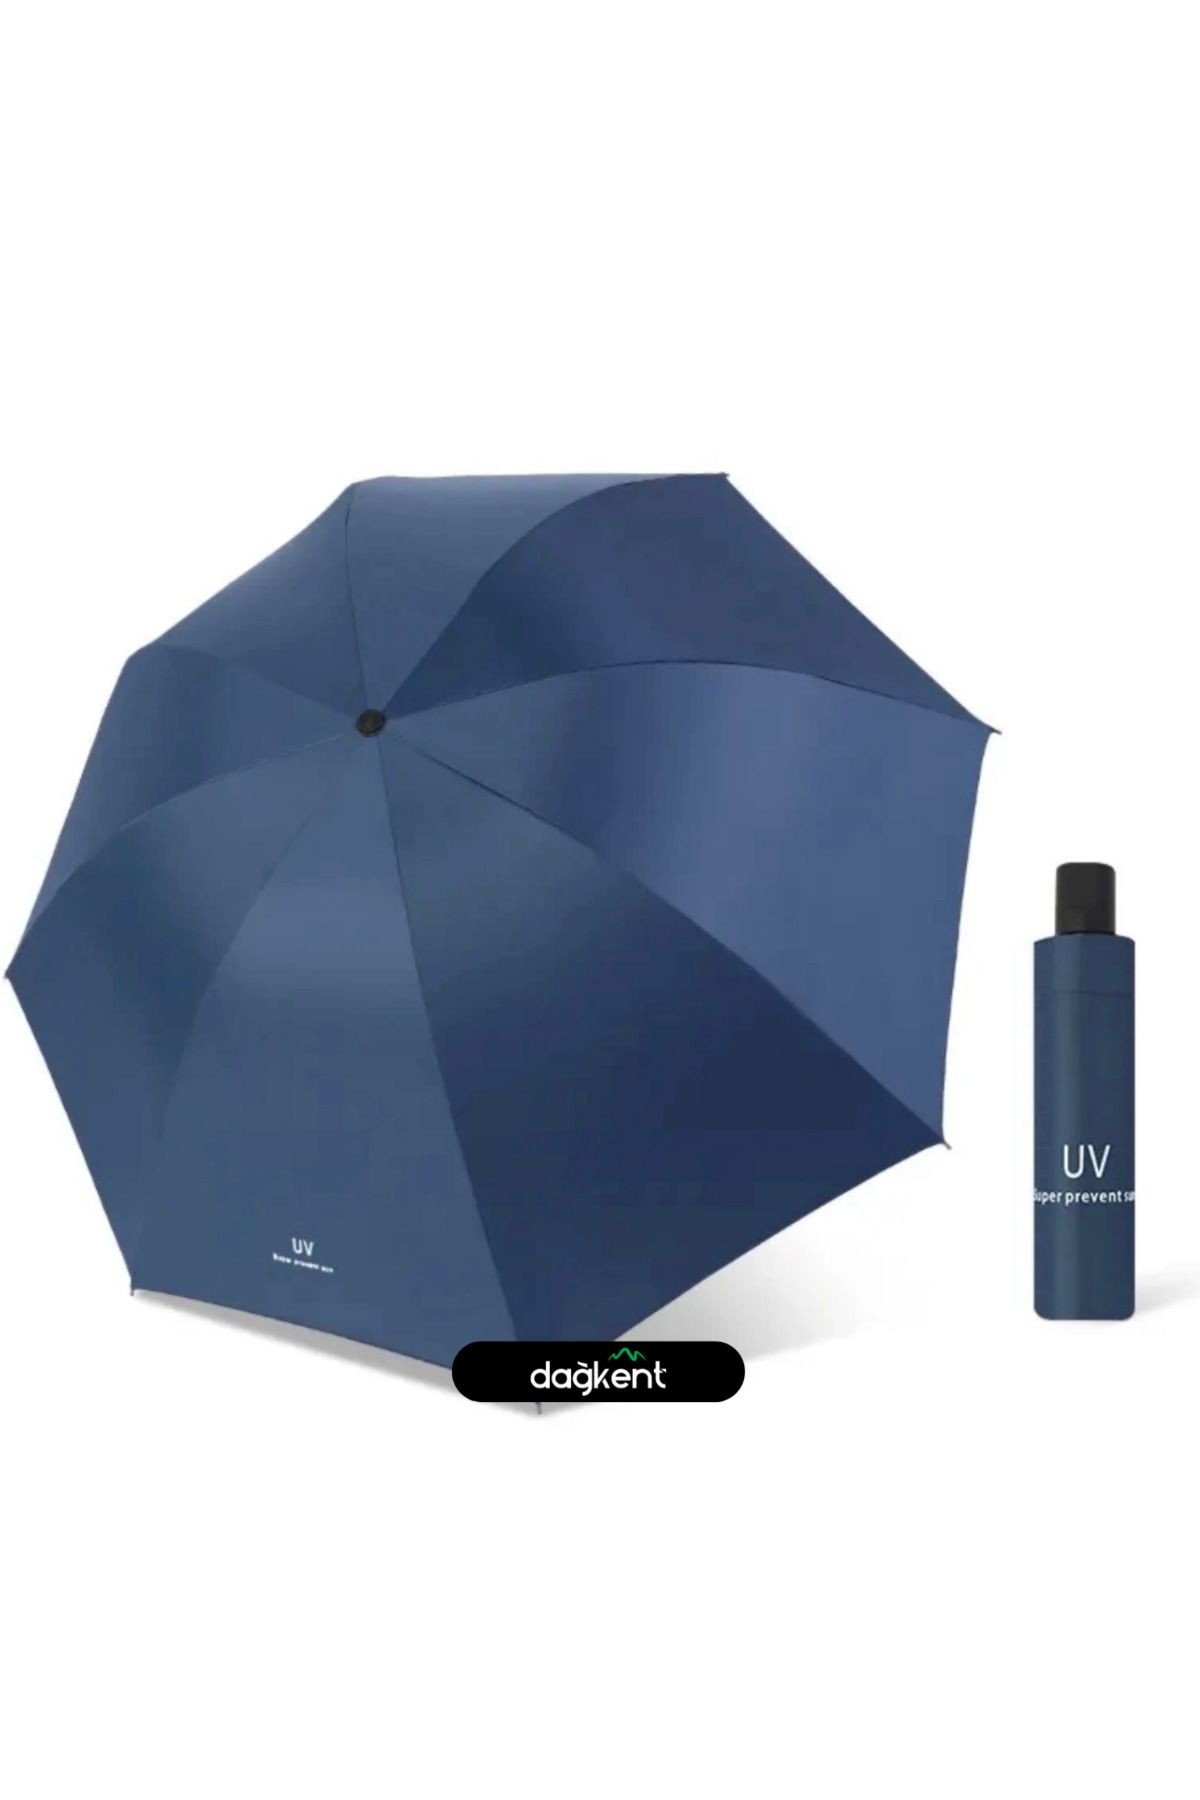 Dağkent Premium Kalite Full Otomatik Lacivert Renk Şemsiye